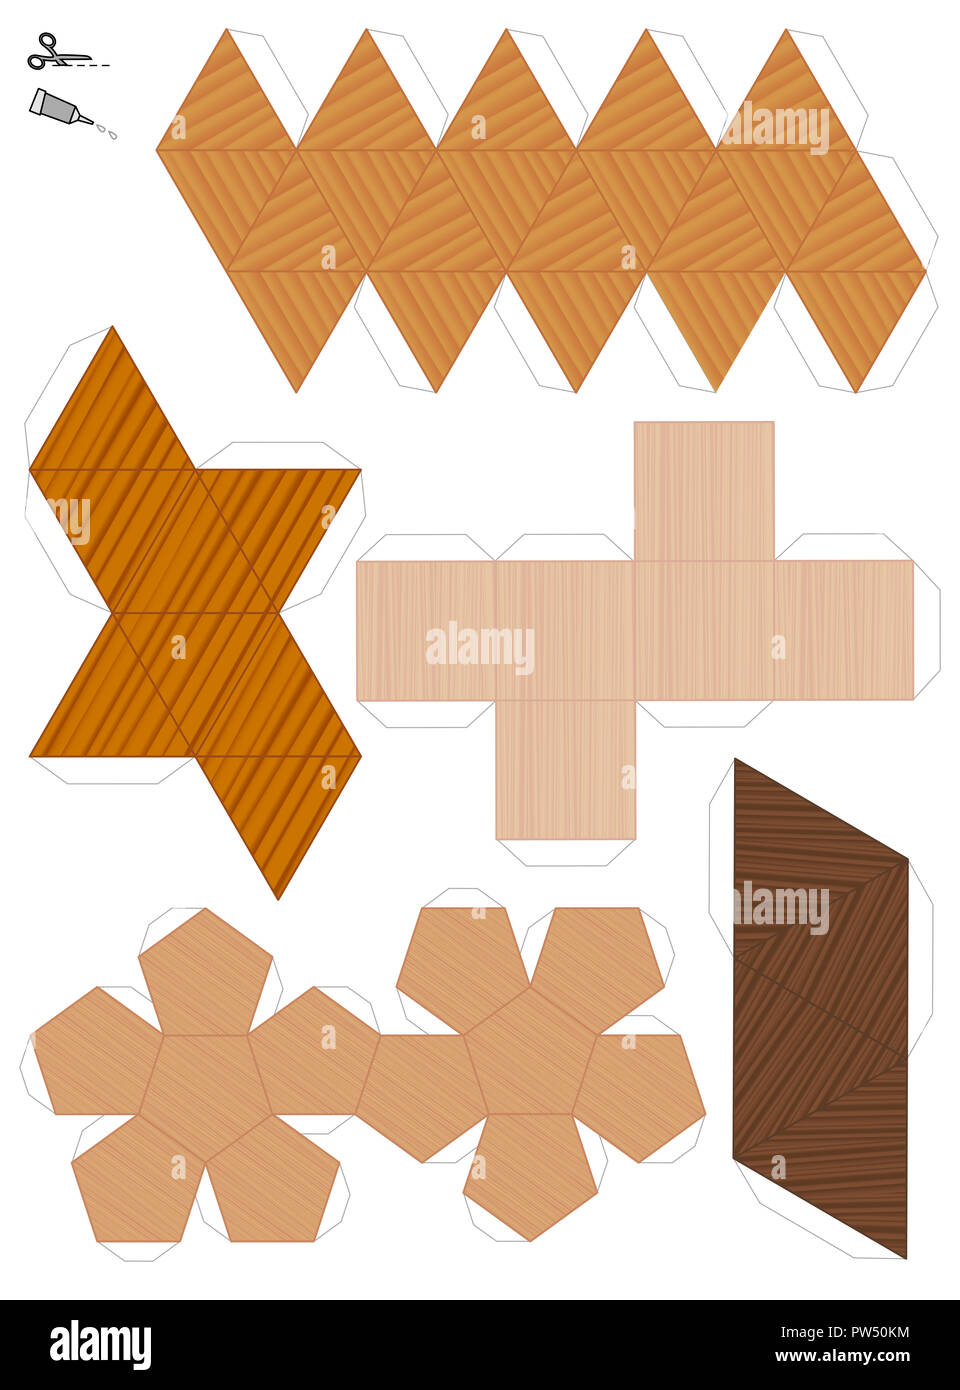 Des modèles sur papier des cinq solides de Platon. Les modèles texturés en bois pour découper et faire cinq figures géométriques. Ensemble d'échantillons avec différentes textures. Banque D'Images